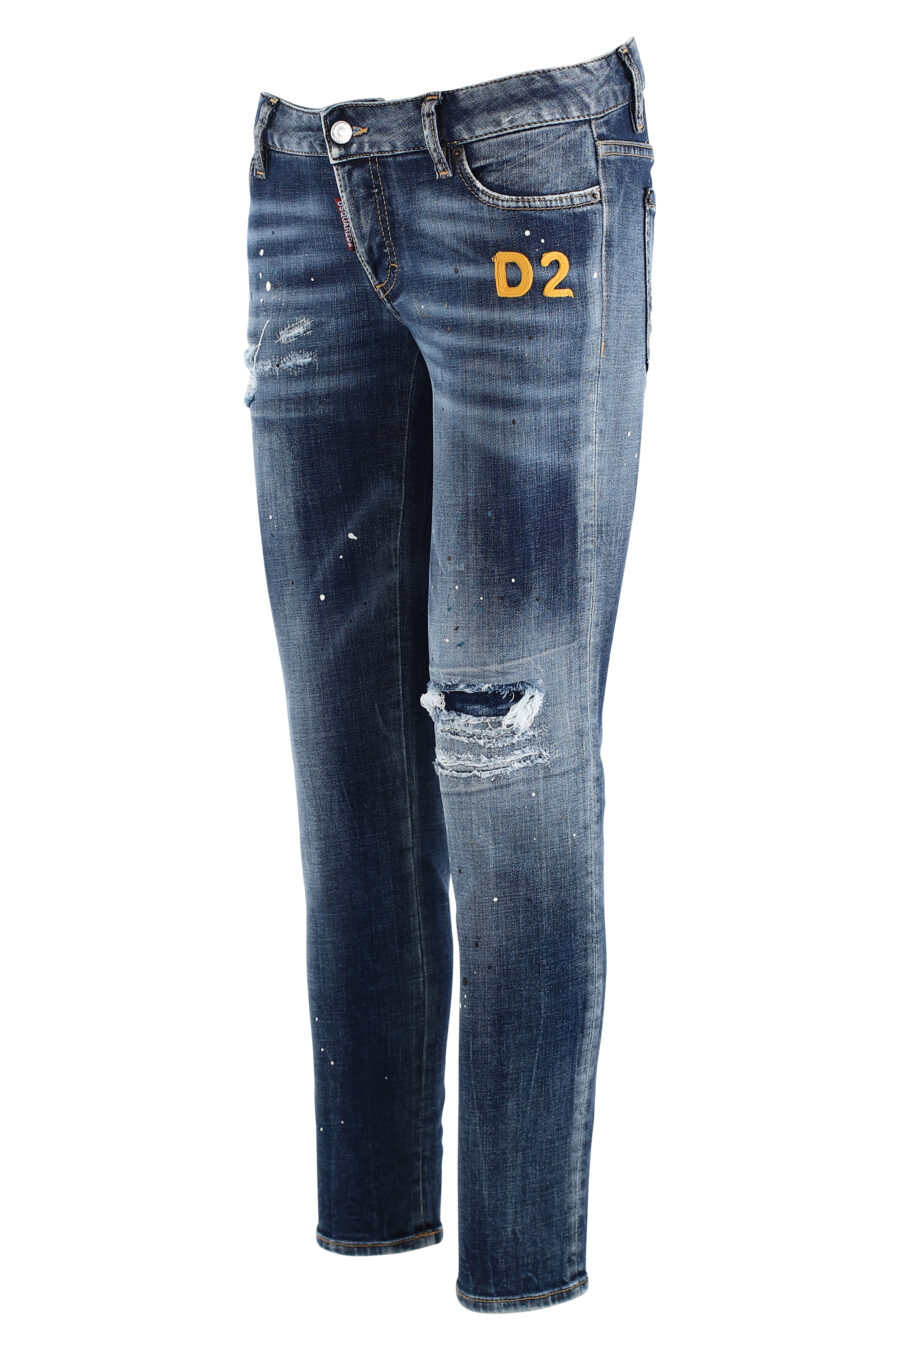 Blaue Jeans Jennifer Cropped Jeans mit gelber Stickerei - IMG 7586